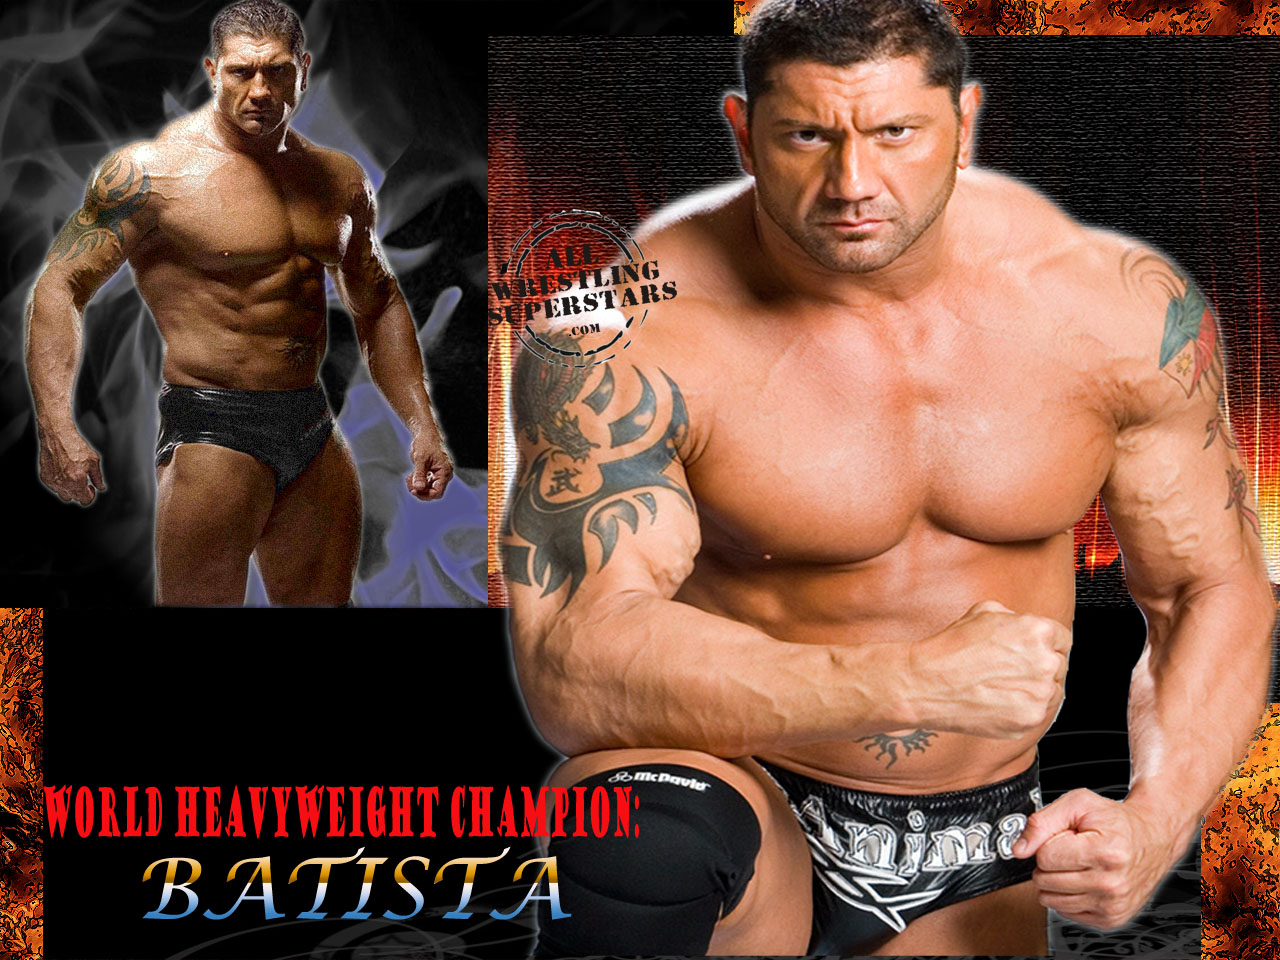 Gallery For Gt Batista Biceps